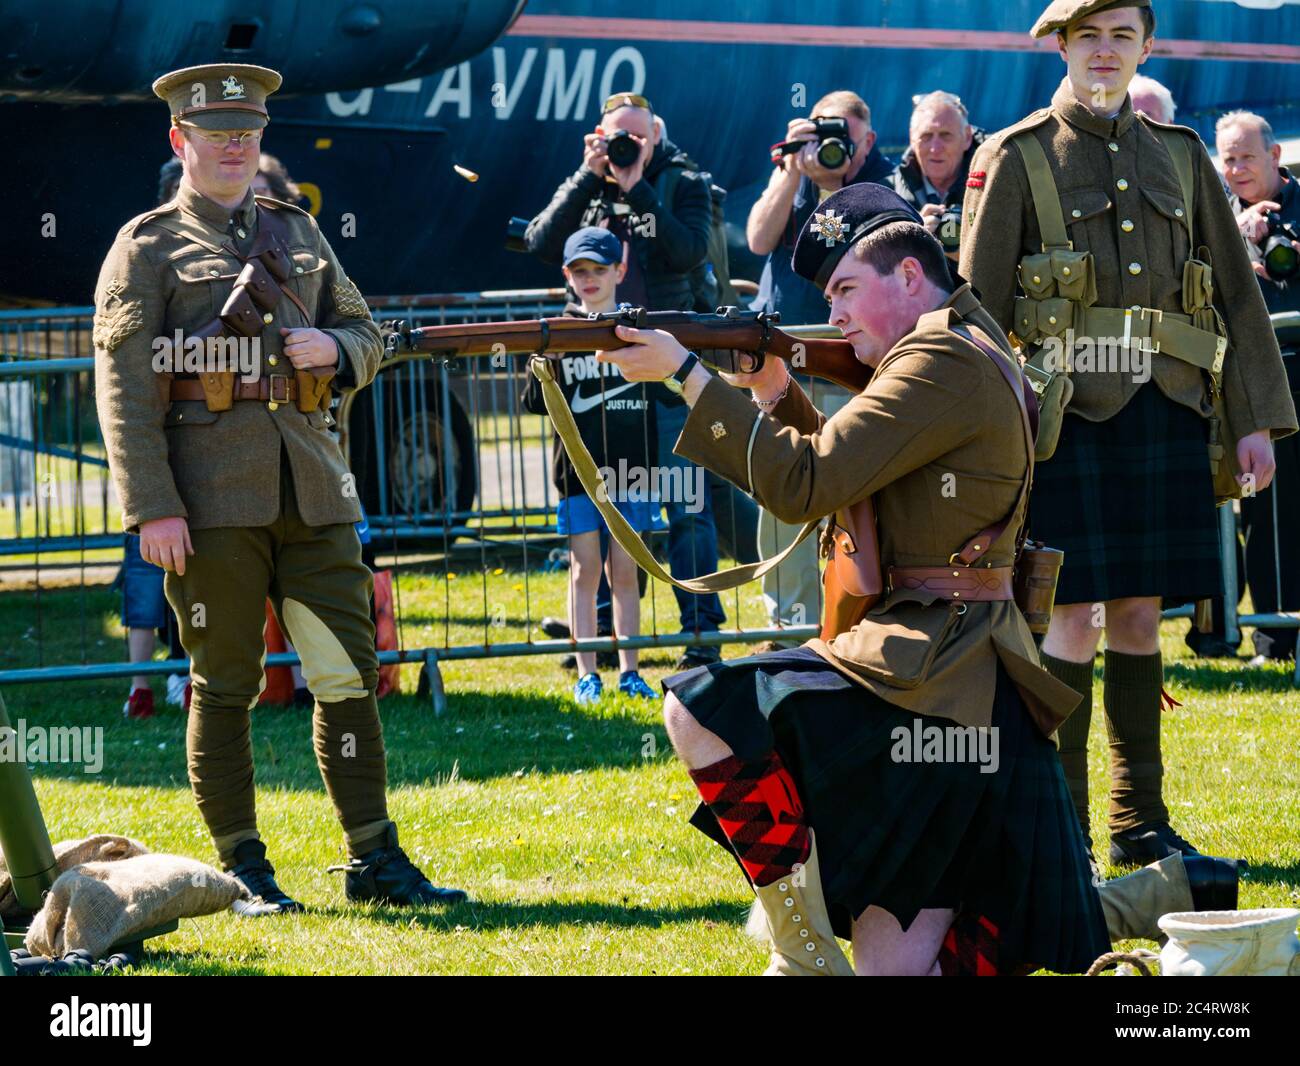 Soldats écossais de la première Guerre mondiale dans le fusil de tir au four, démonstration d'expérience de guerre, East Fortune, East Lothian, Écosse, Royaume-Uni Banque D'Images